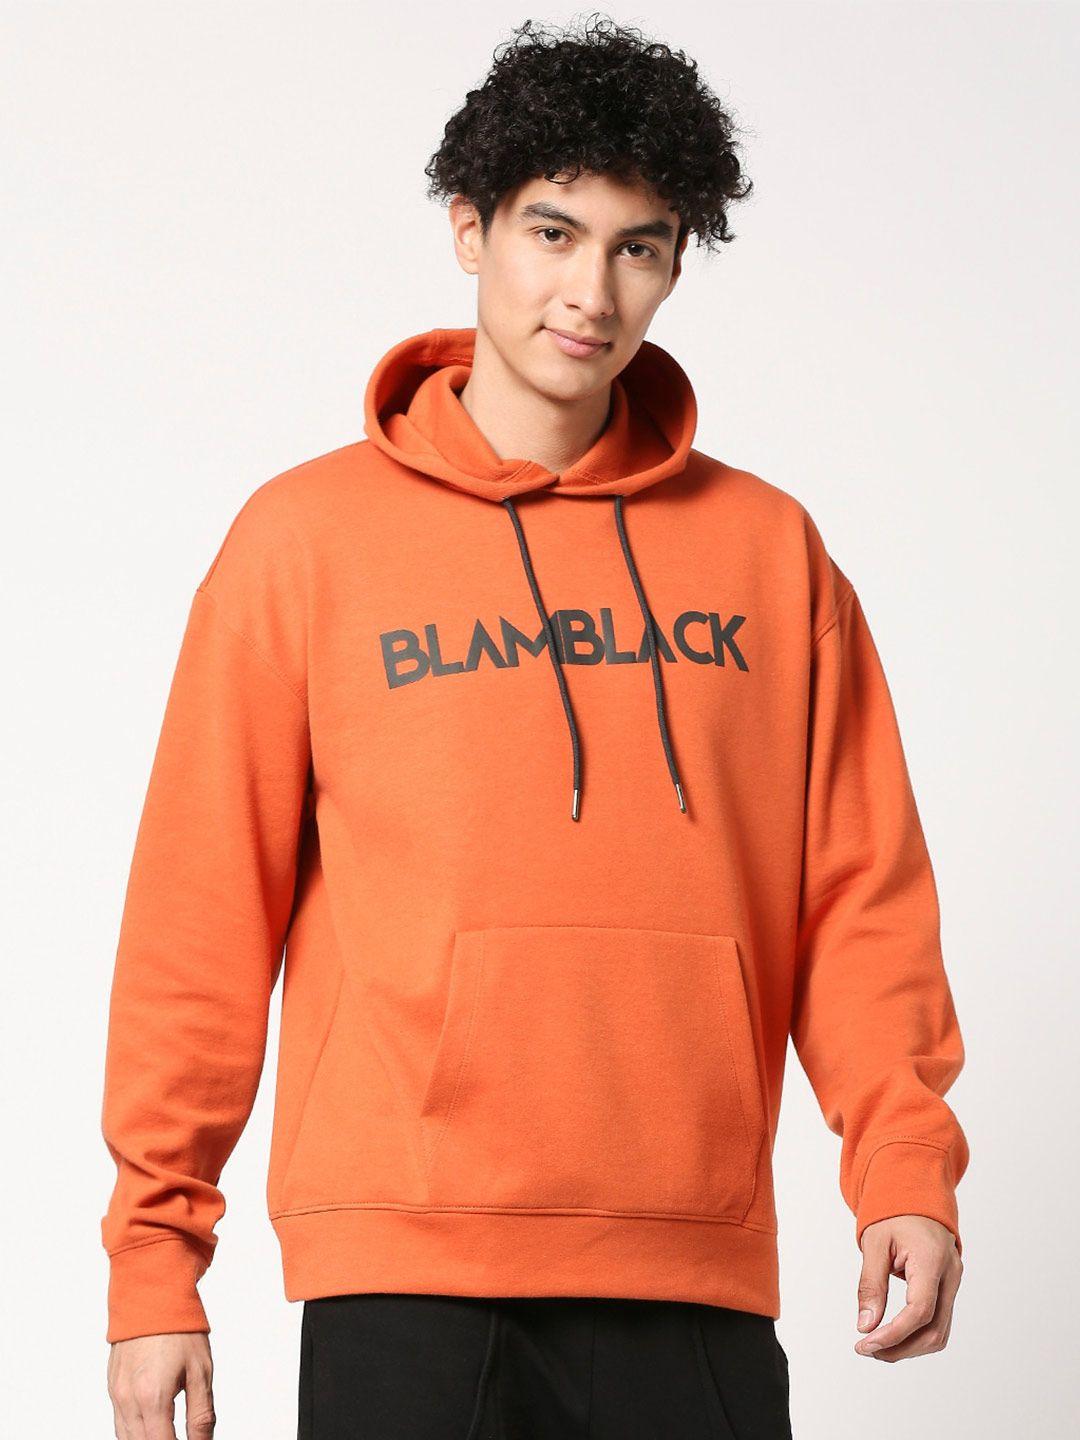 blamblack typography printed hooded sweatshirt